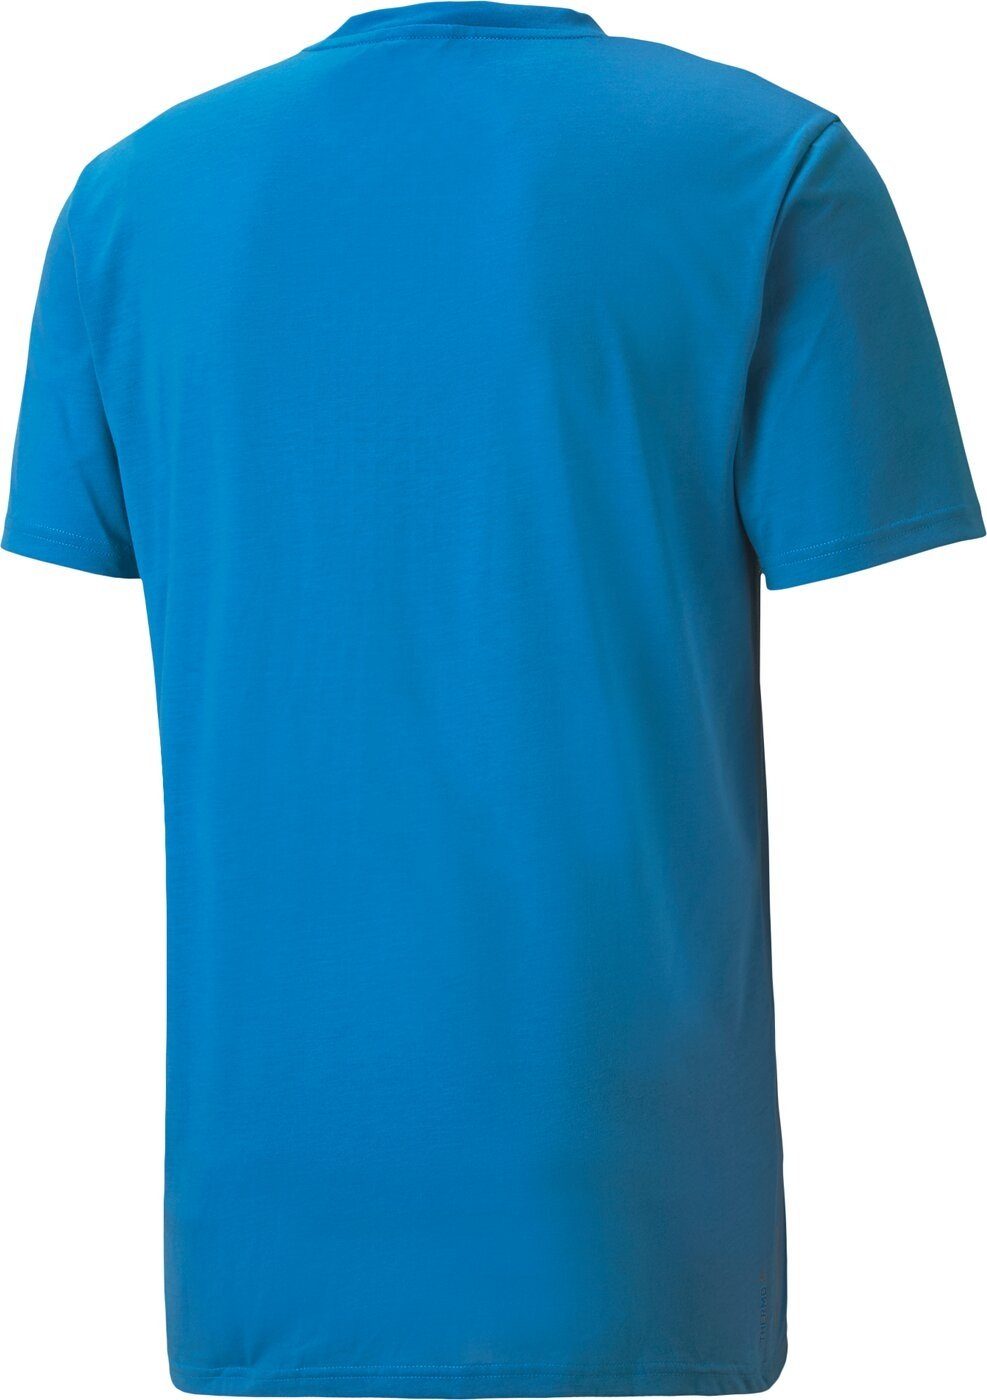 SHORT 003 T-Shirt NRGY TRAIN Puma Tec BLUE BND R THERMO